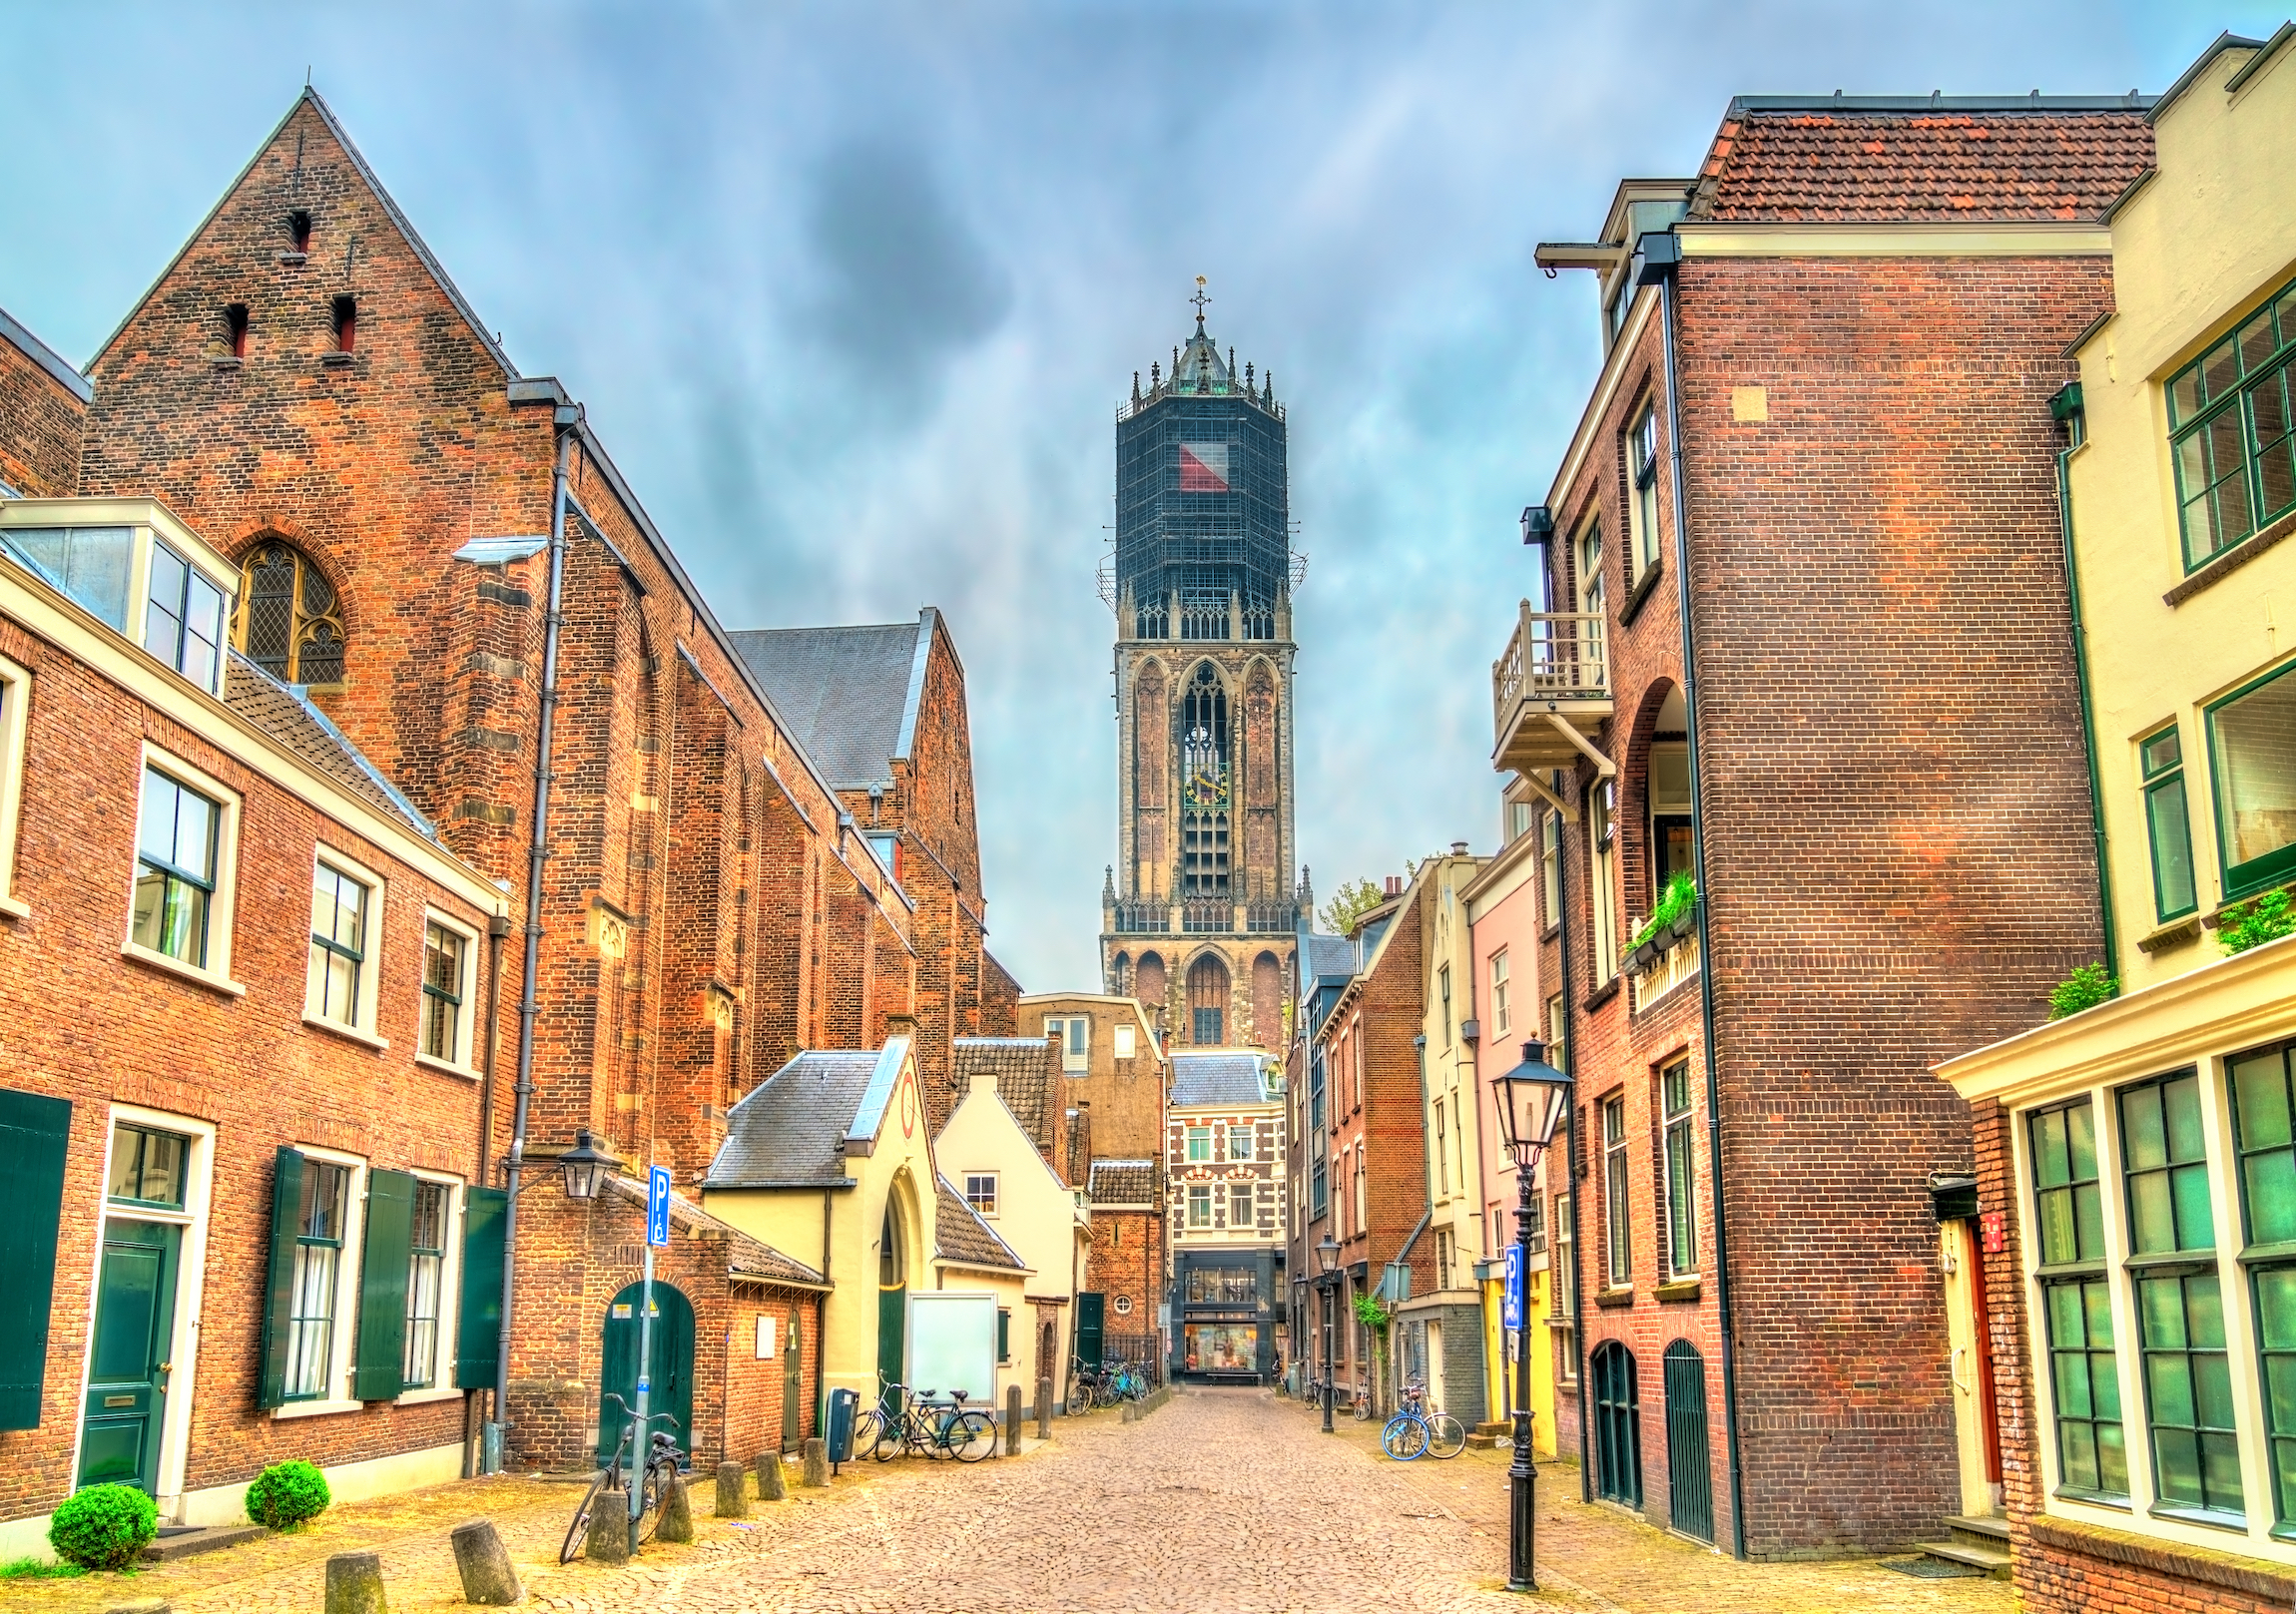 Widok na wieżę Dom w Utrechcie, najwyższą wieżę kościelną w Holandii